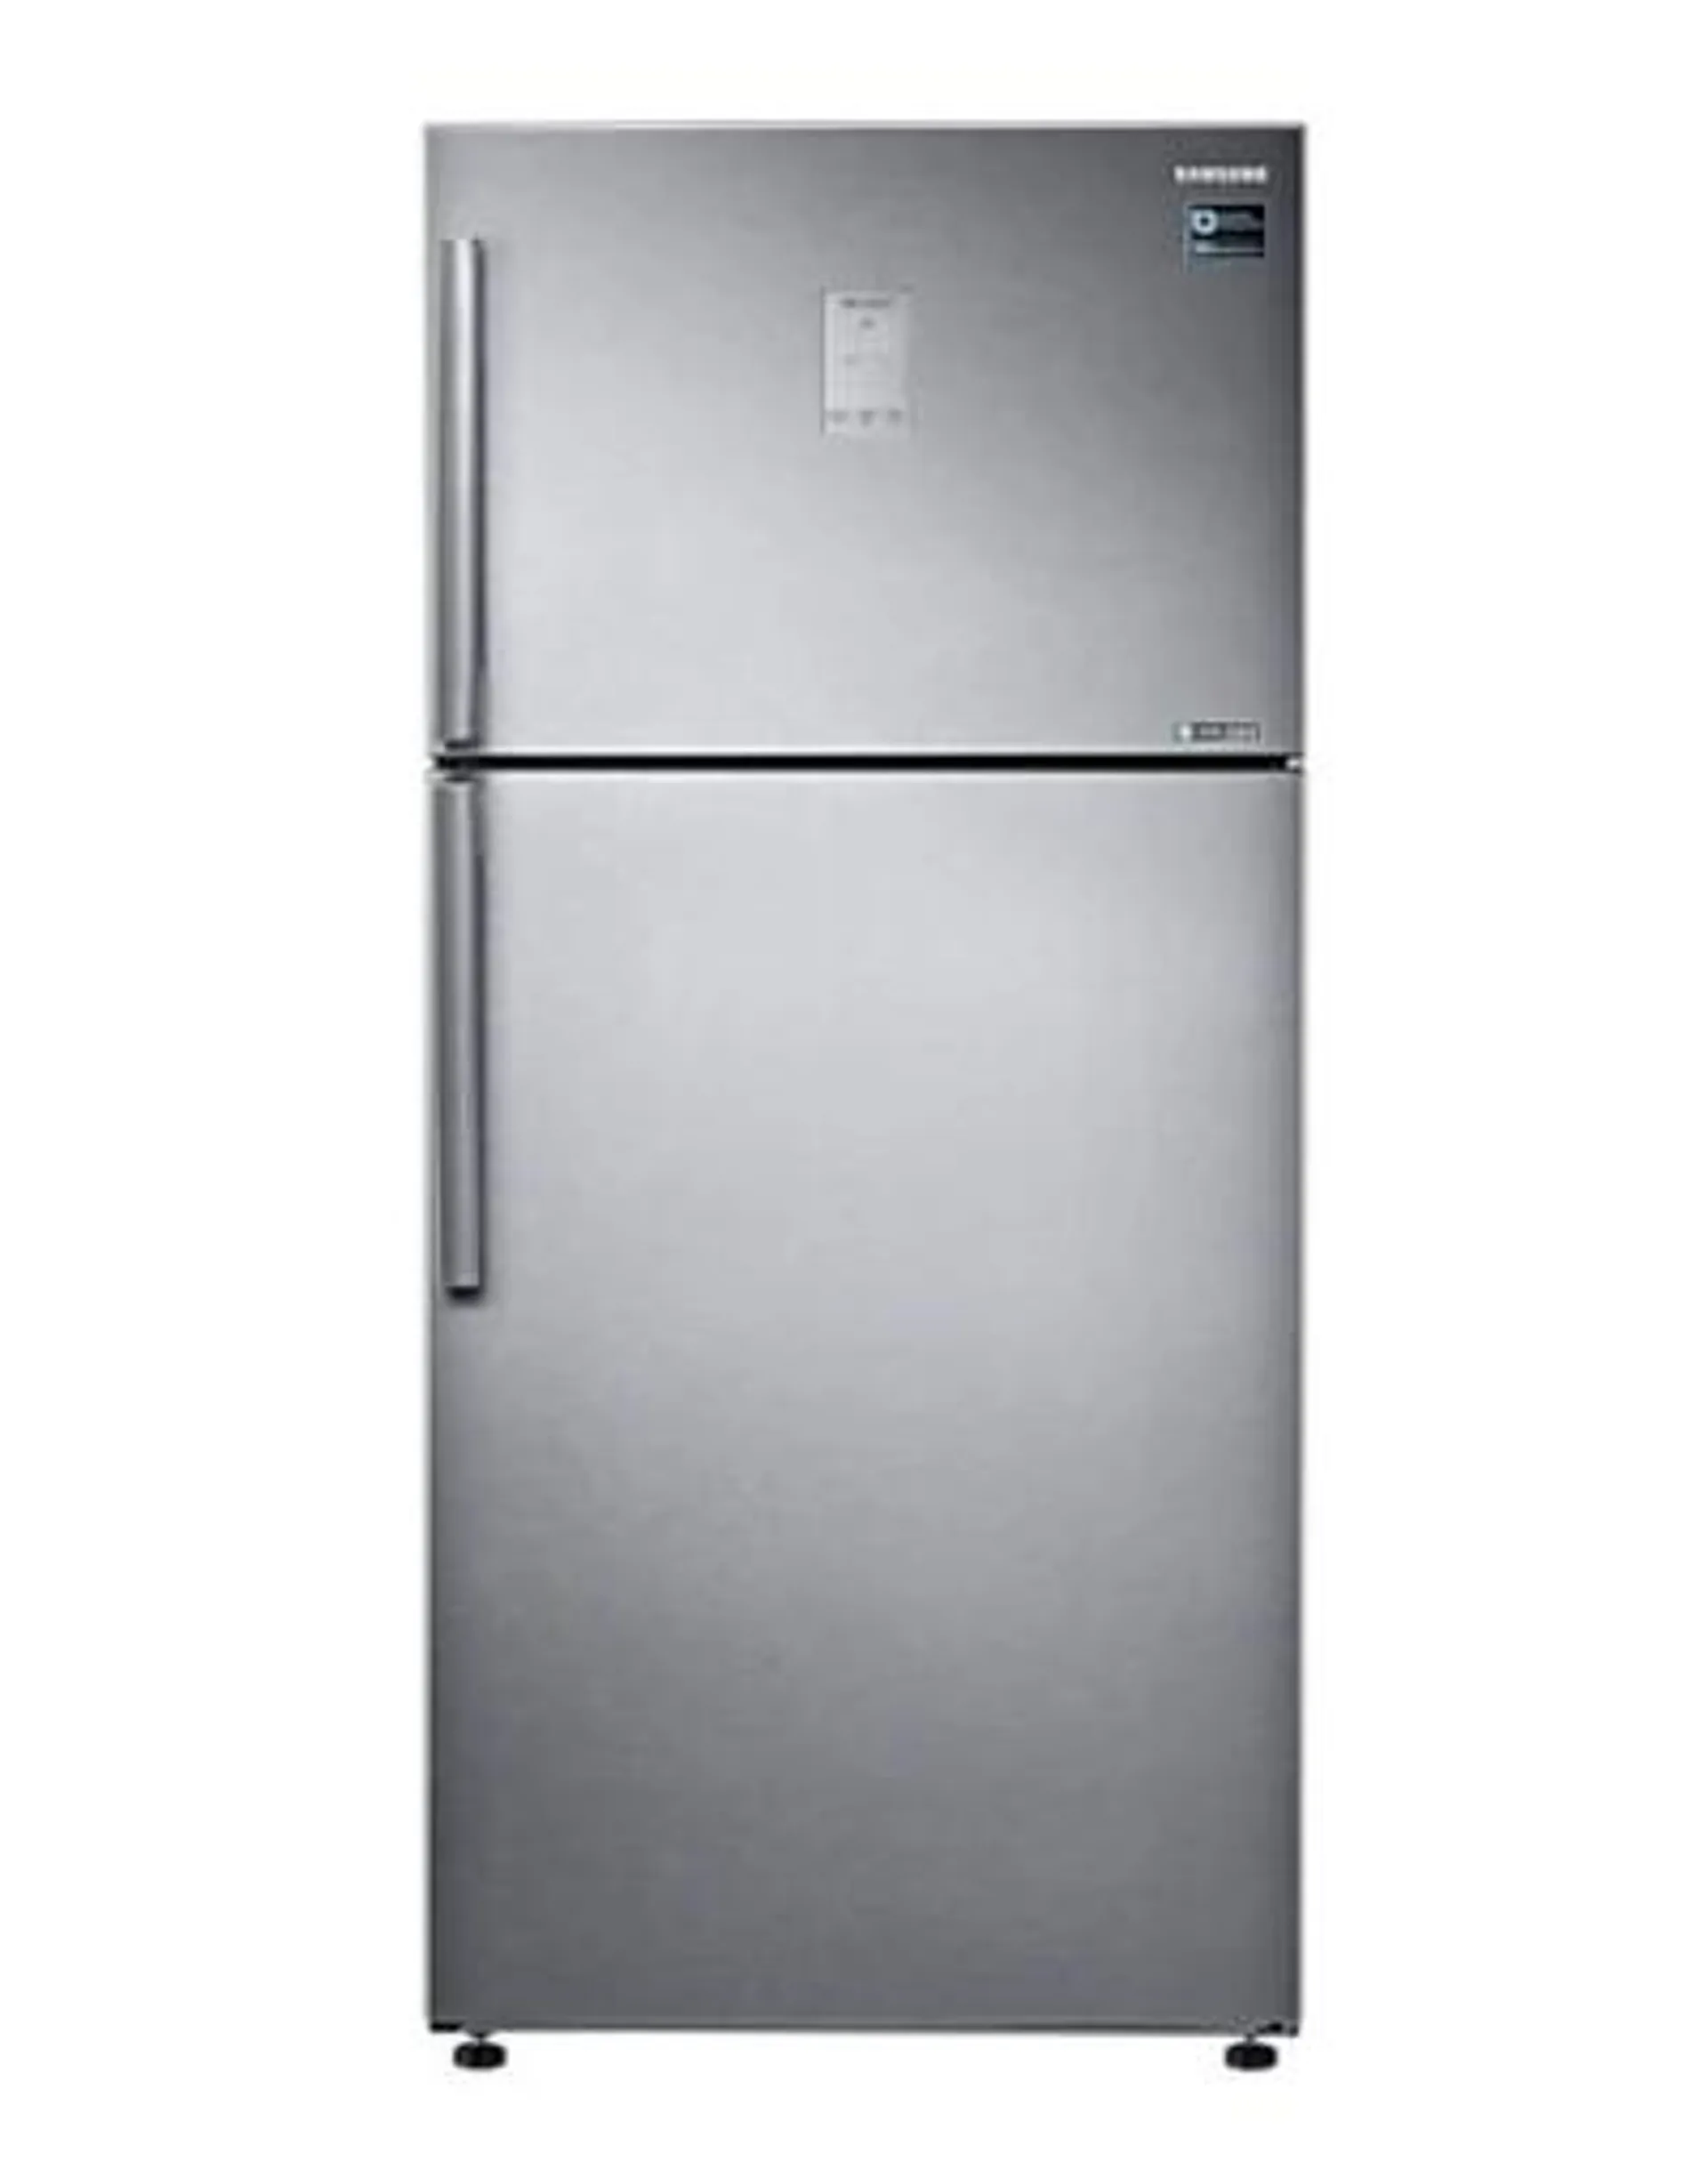 Tipologia di frigorifero Doppia porta - Classe energetica E - Tipo di Ripiani Plastica